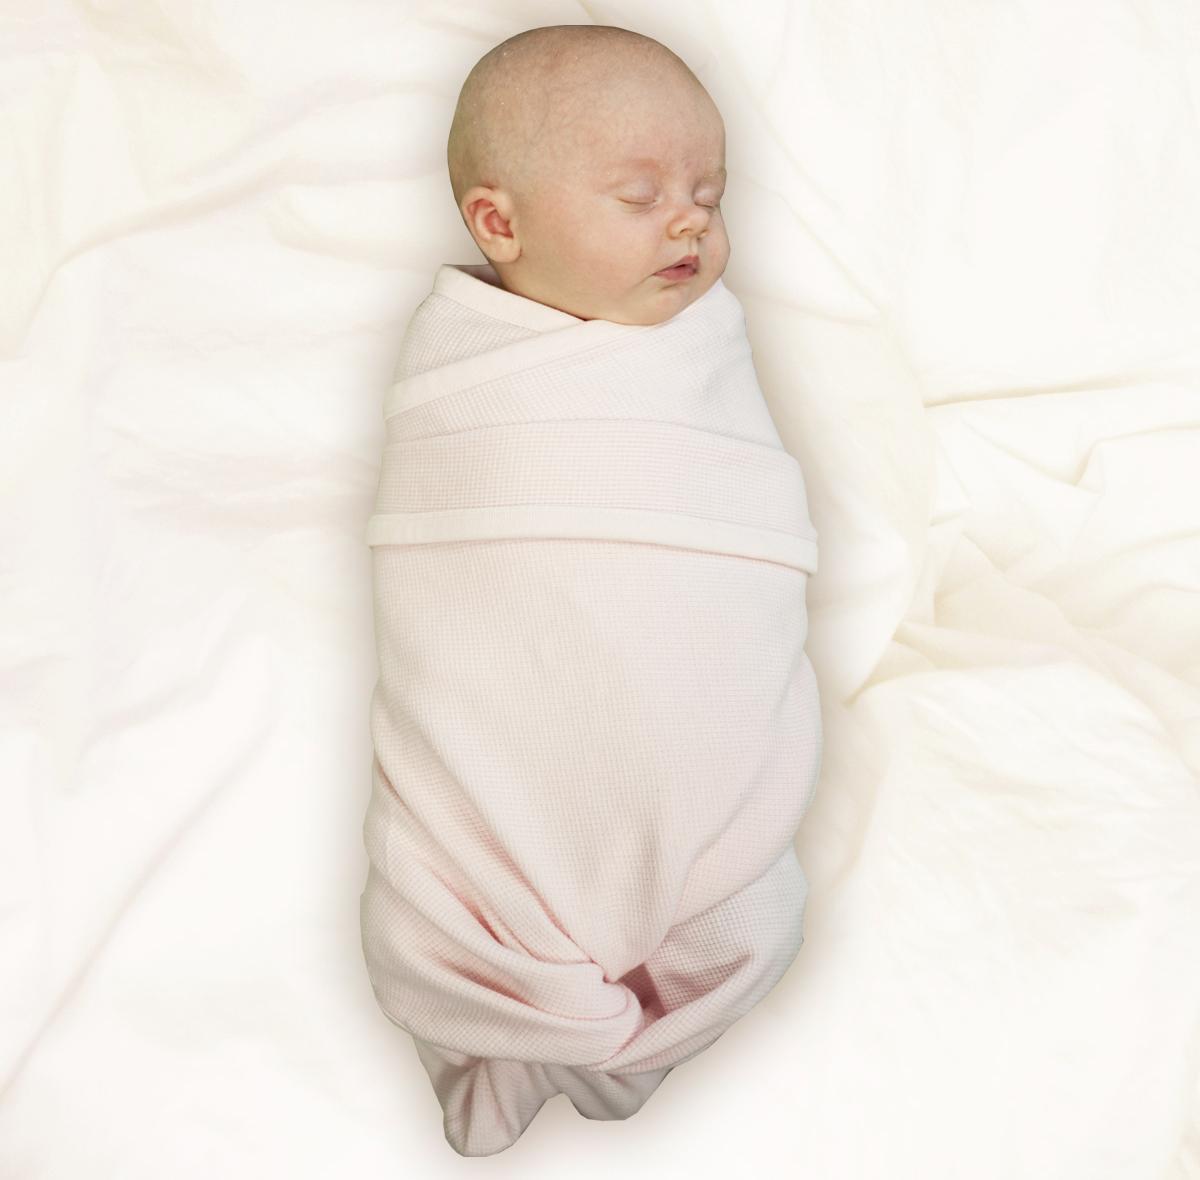 Новорожденный спит в пеленке